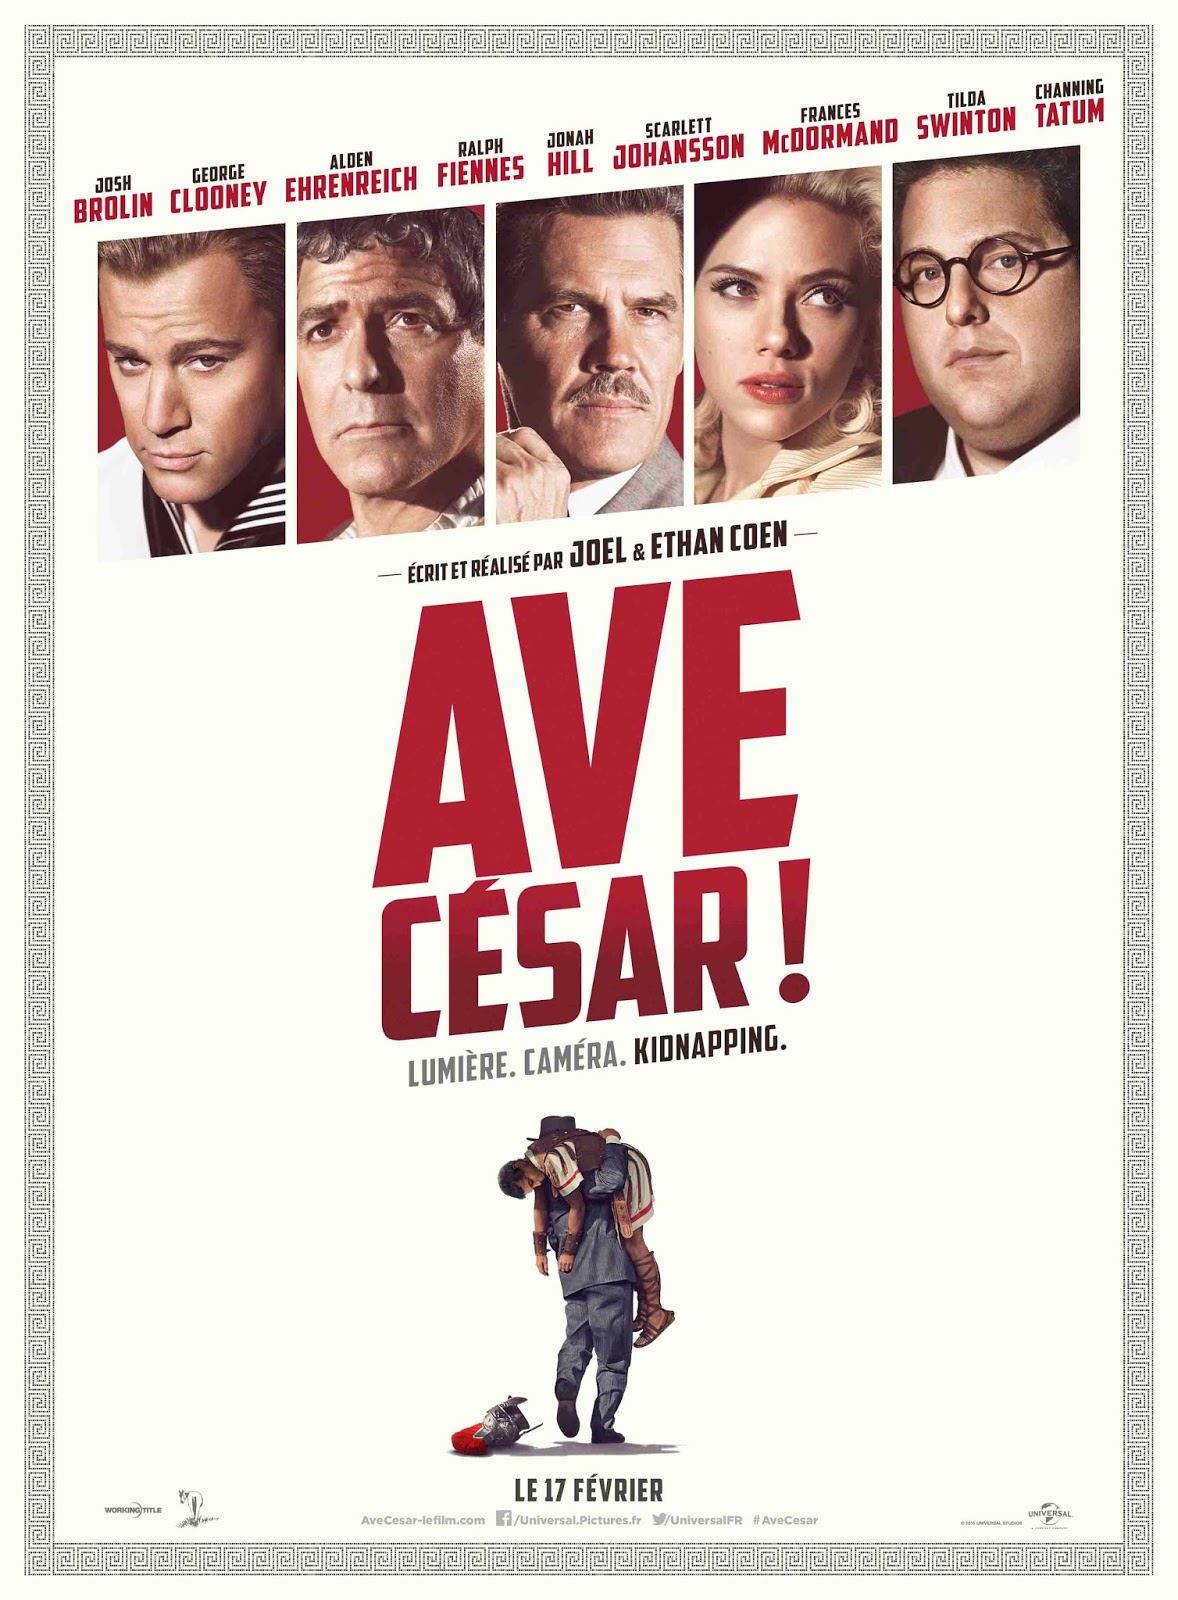 Ave, César! Torrent - Blu-ray Rip 720p e 1080p Dublado (2016)